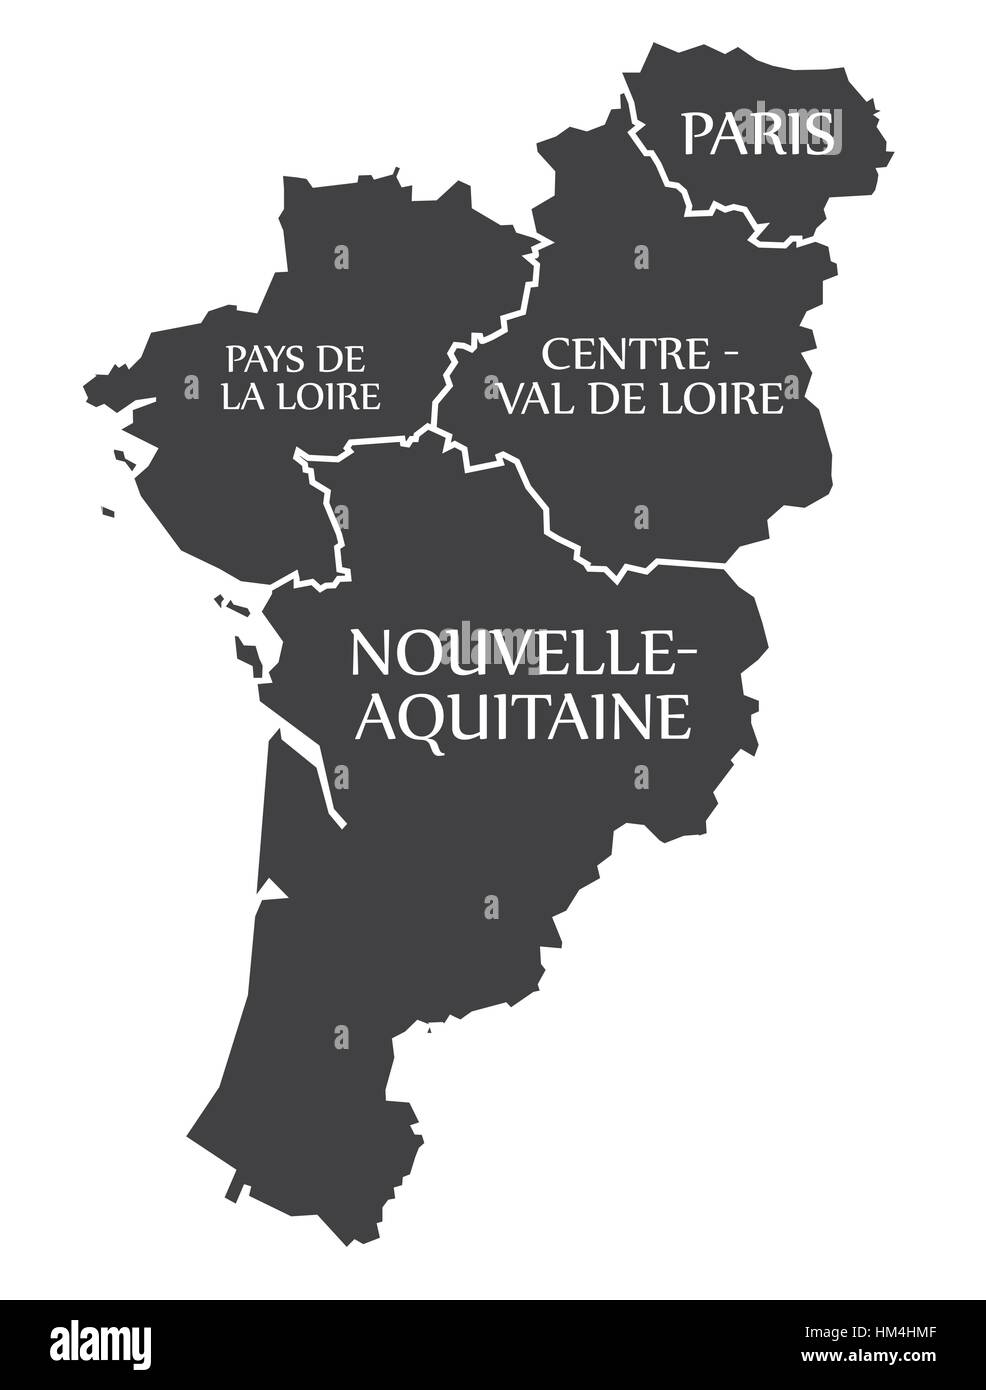 Les pays de la loire - Paris - Centre - Val de Loire - Nouvelle - Aquitaine Site France illustration Illustration de Vecteur